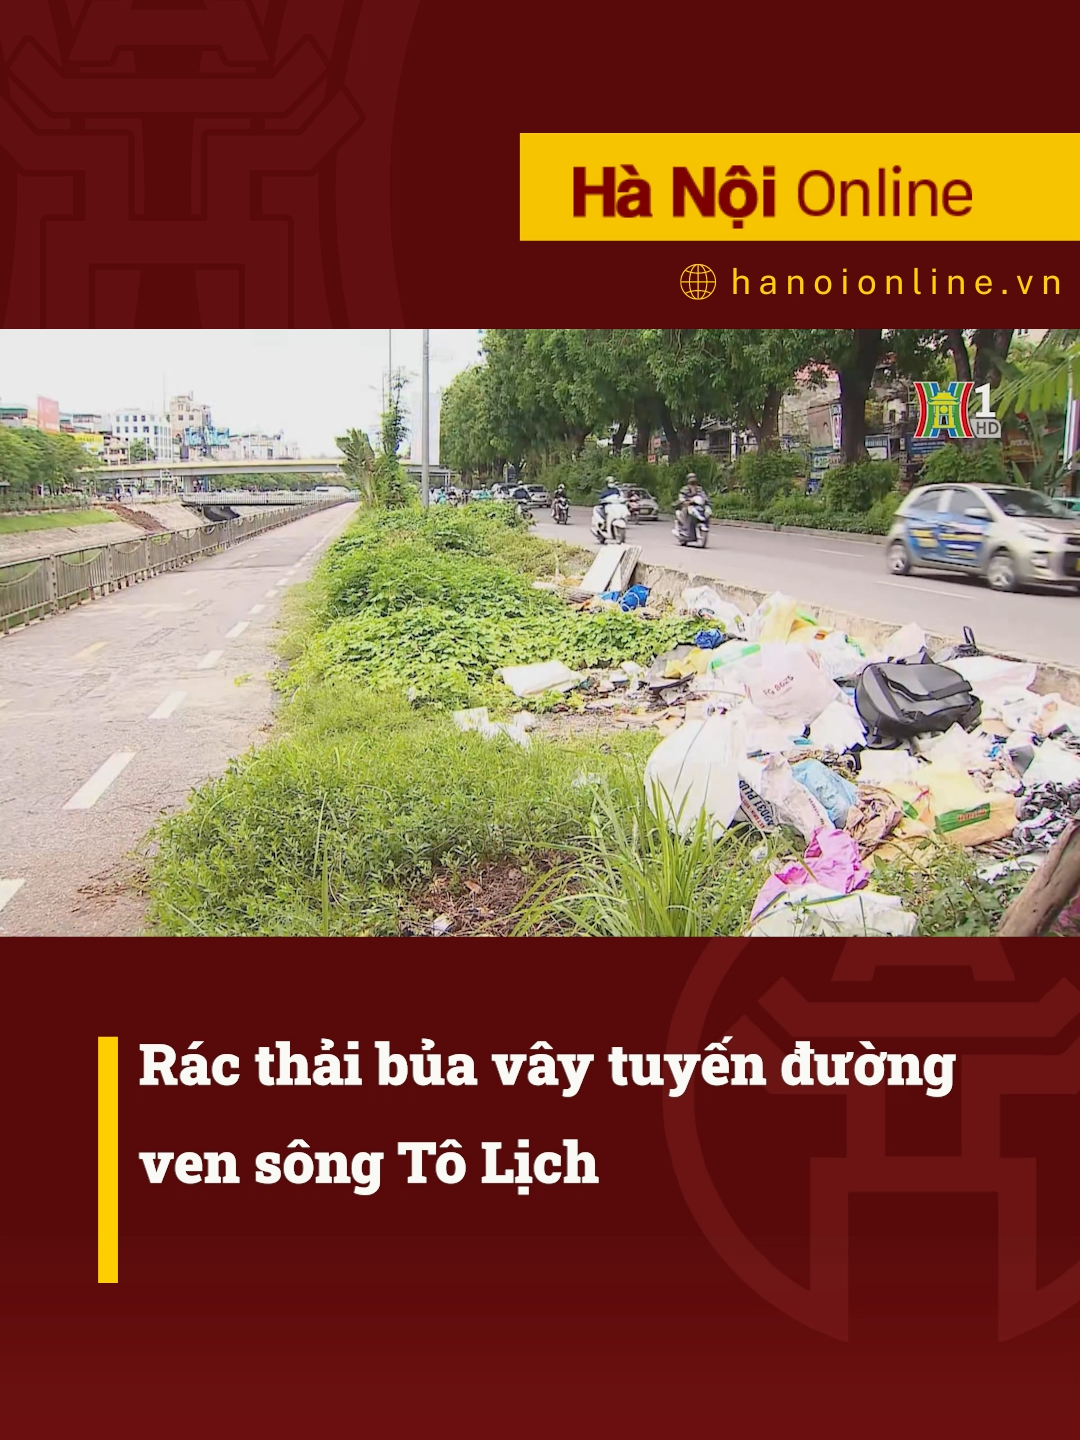 Rác thải bủa vây tuyến đường ven sông Tô Lịch #htvdaihanoi #tiktoknews #socialnews #tintuc #songtolich #racthai